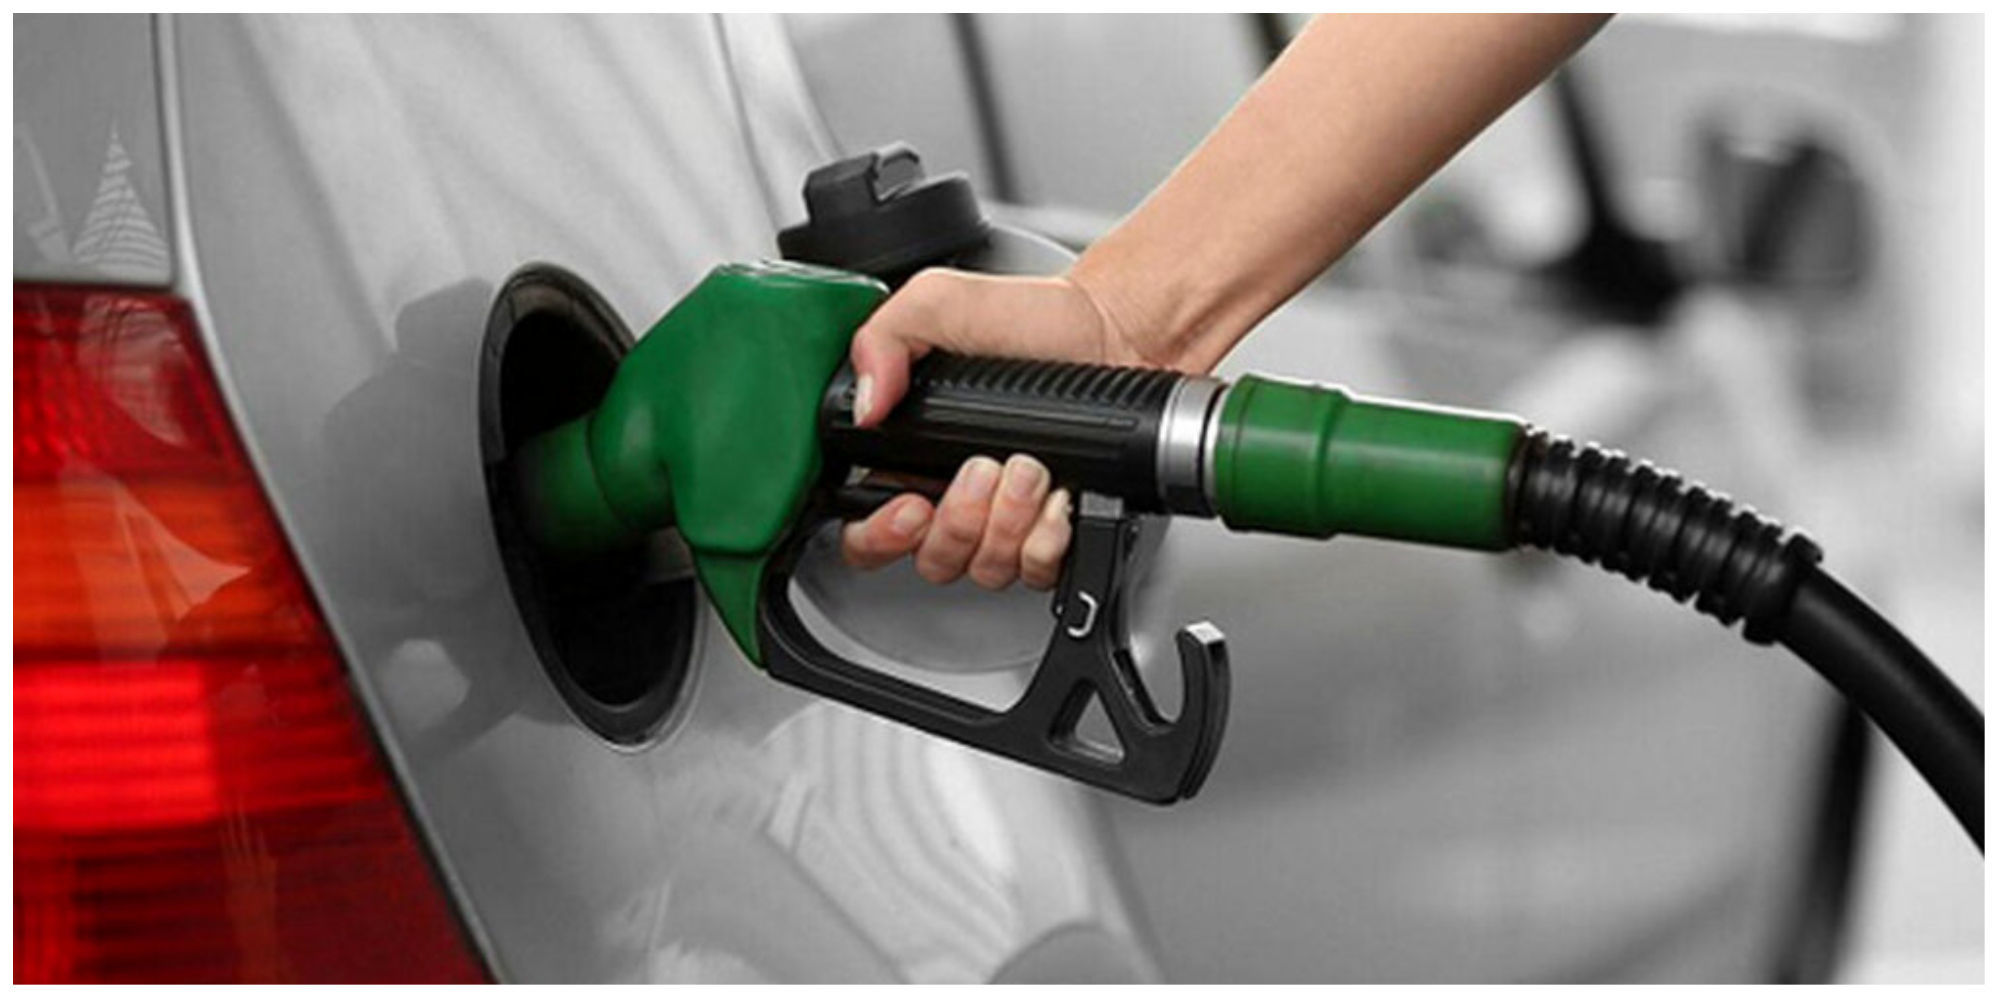 قیمت بنزین باید به صورت عادت و تدریجی گران شود